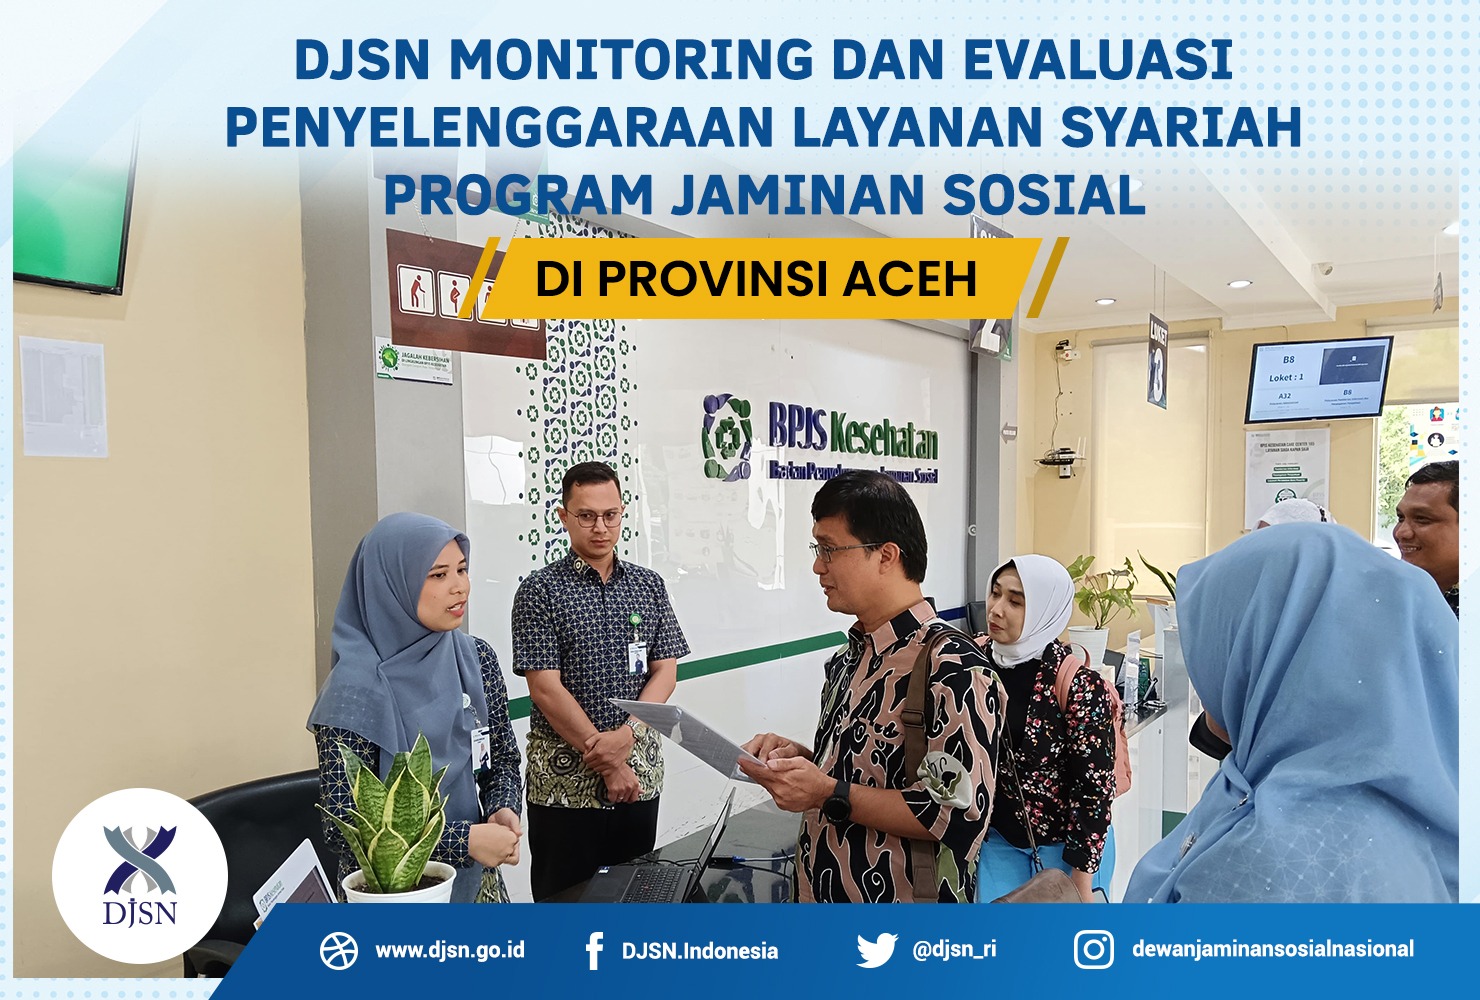 DJSN Monitoring dan Evaluasi Penyelenggaraan Layanan Syariah Program Jaminan Sosial